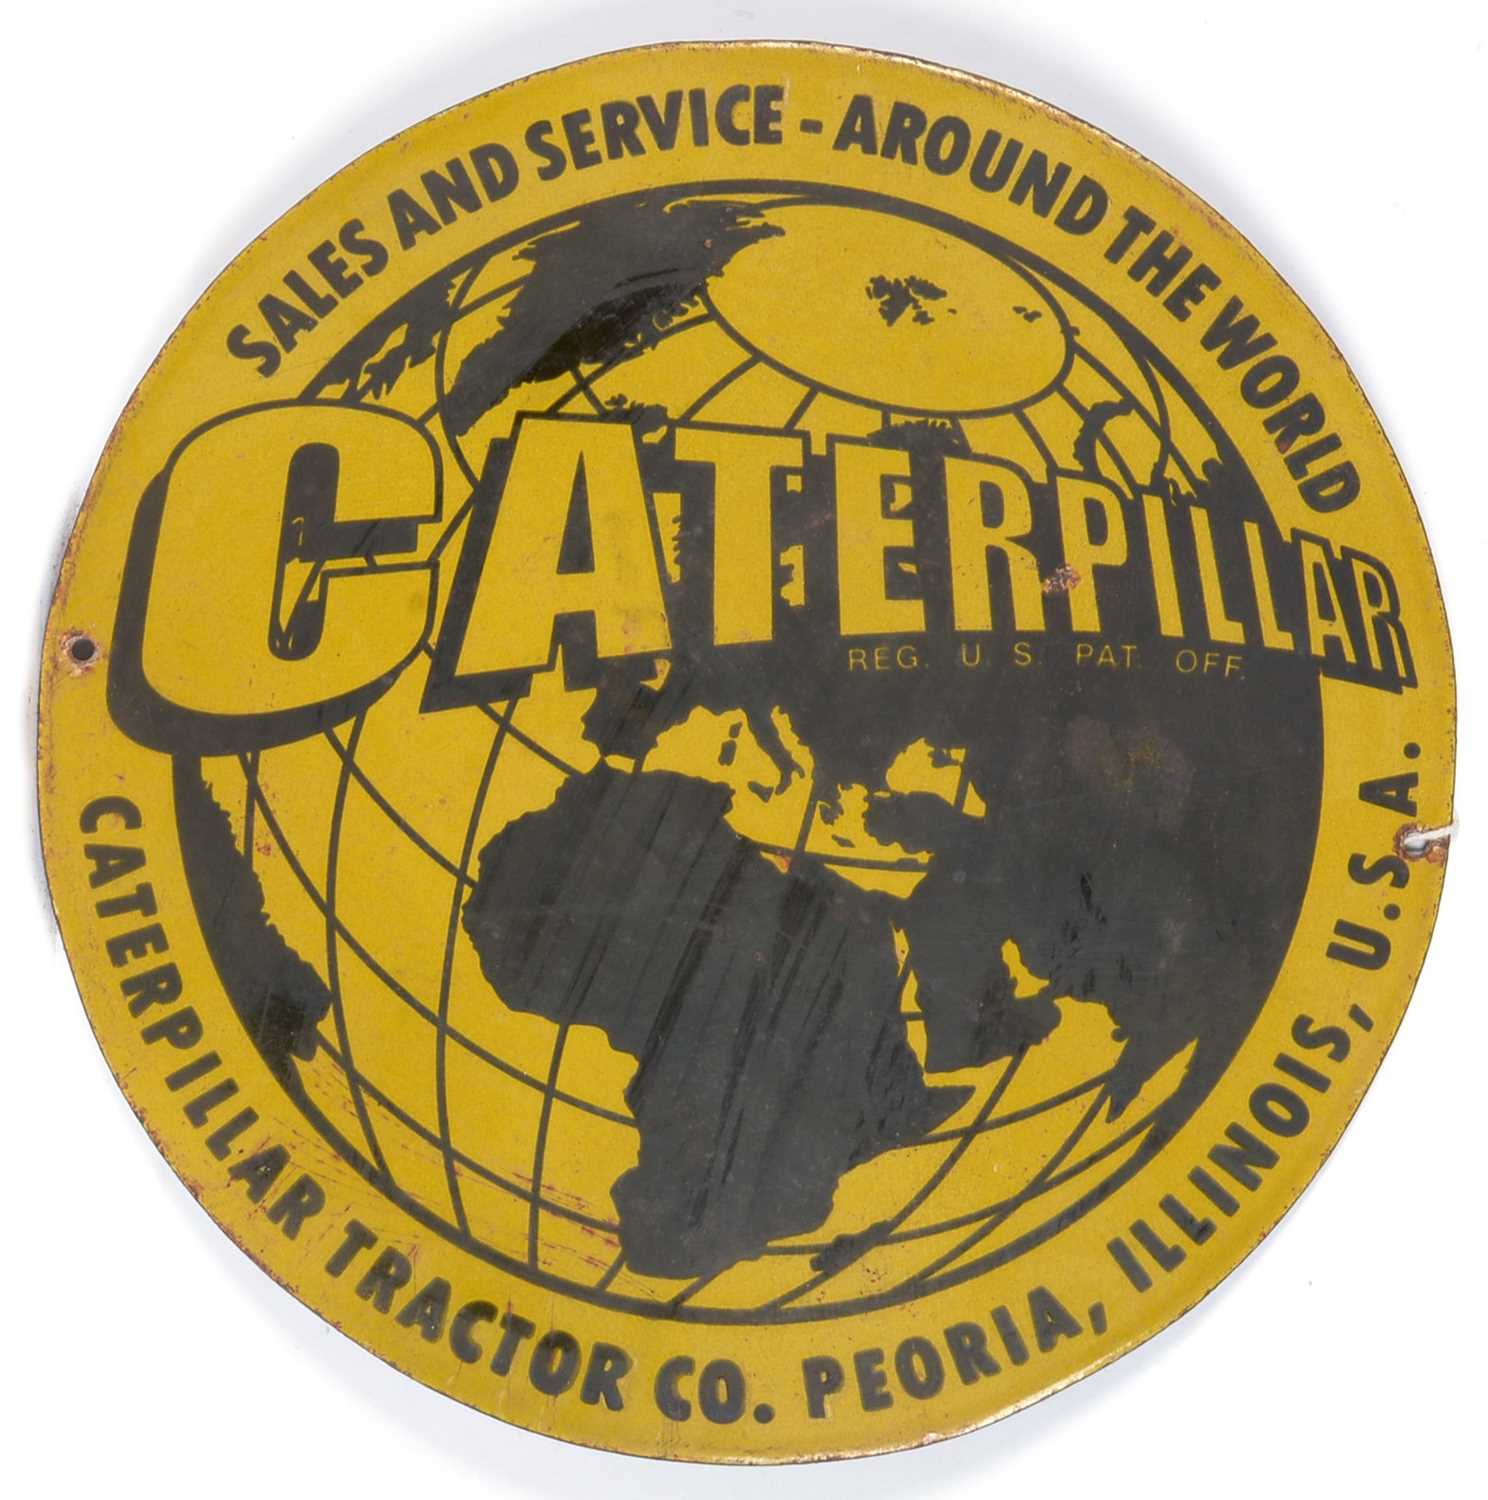 Caterpillar enamel advertising sign - Image 2 of 3